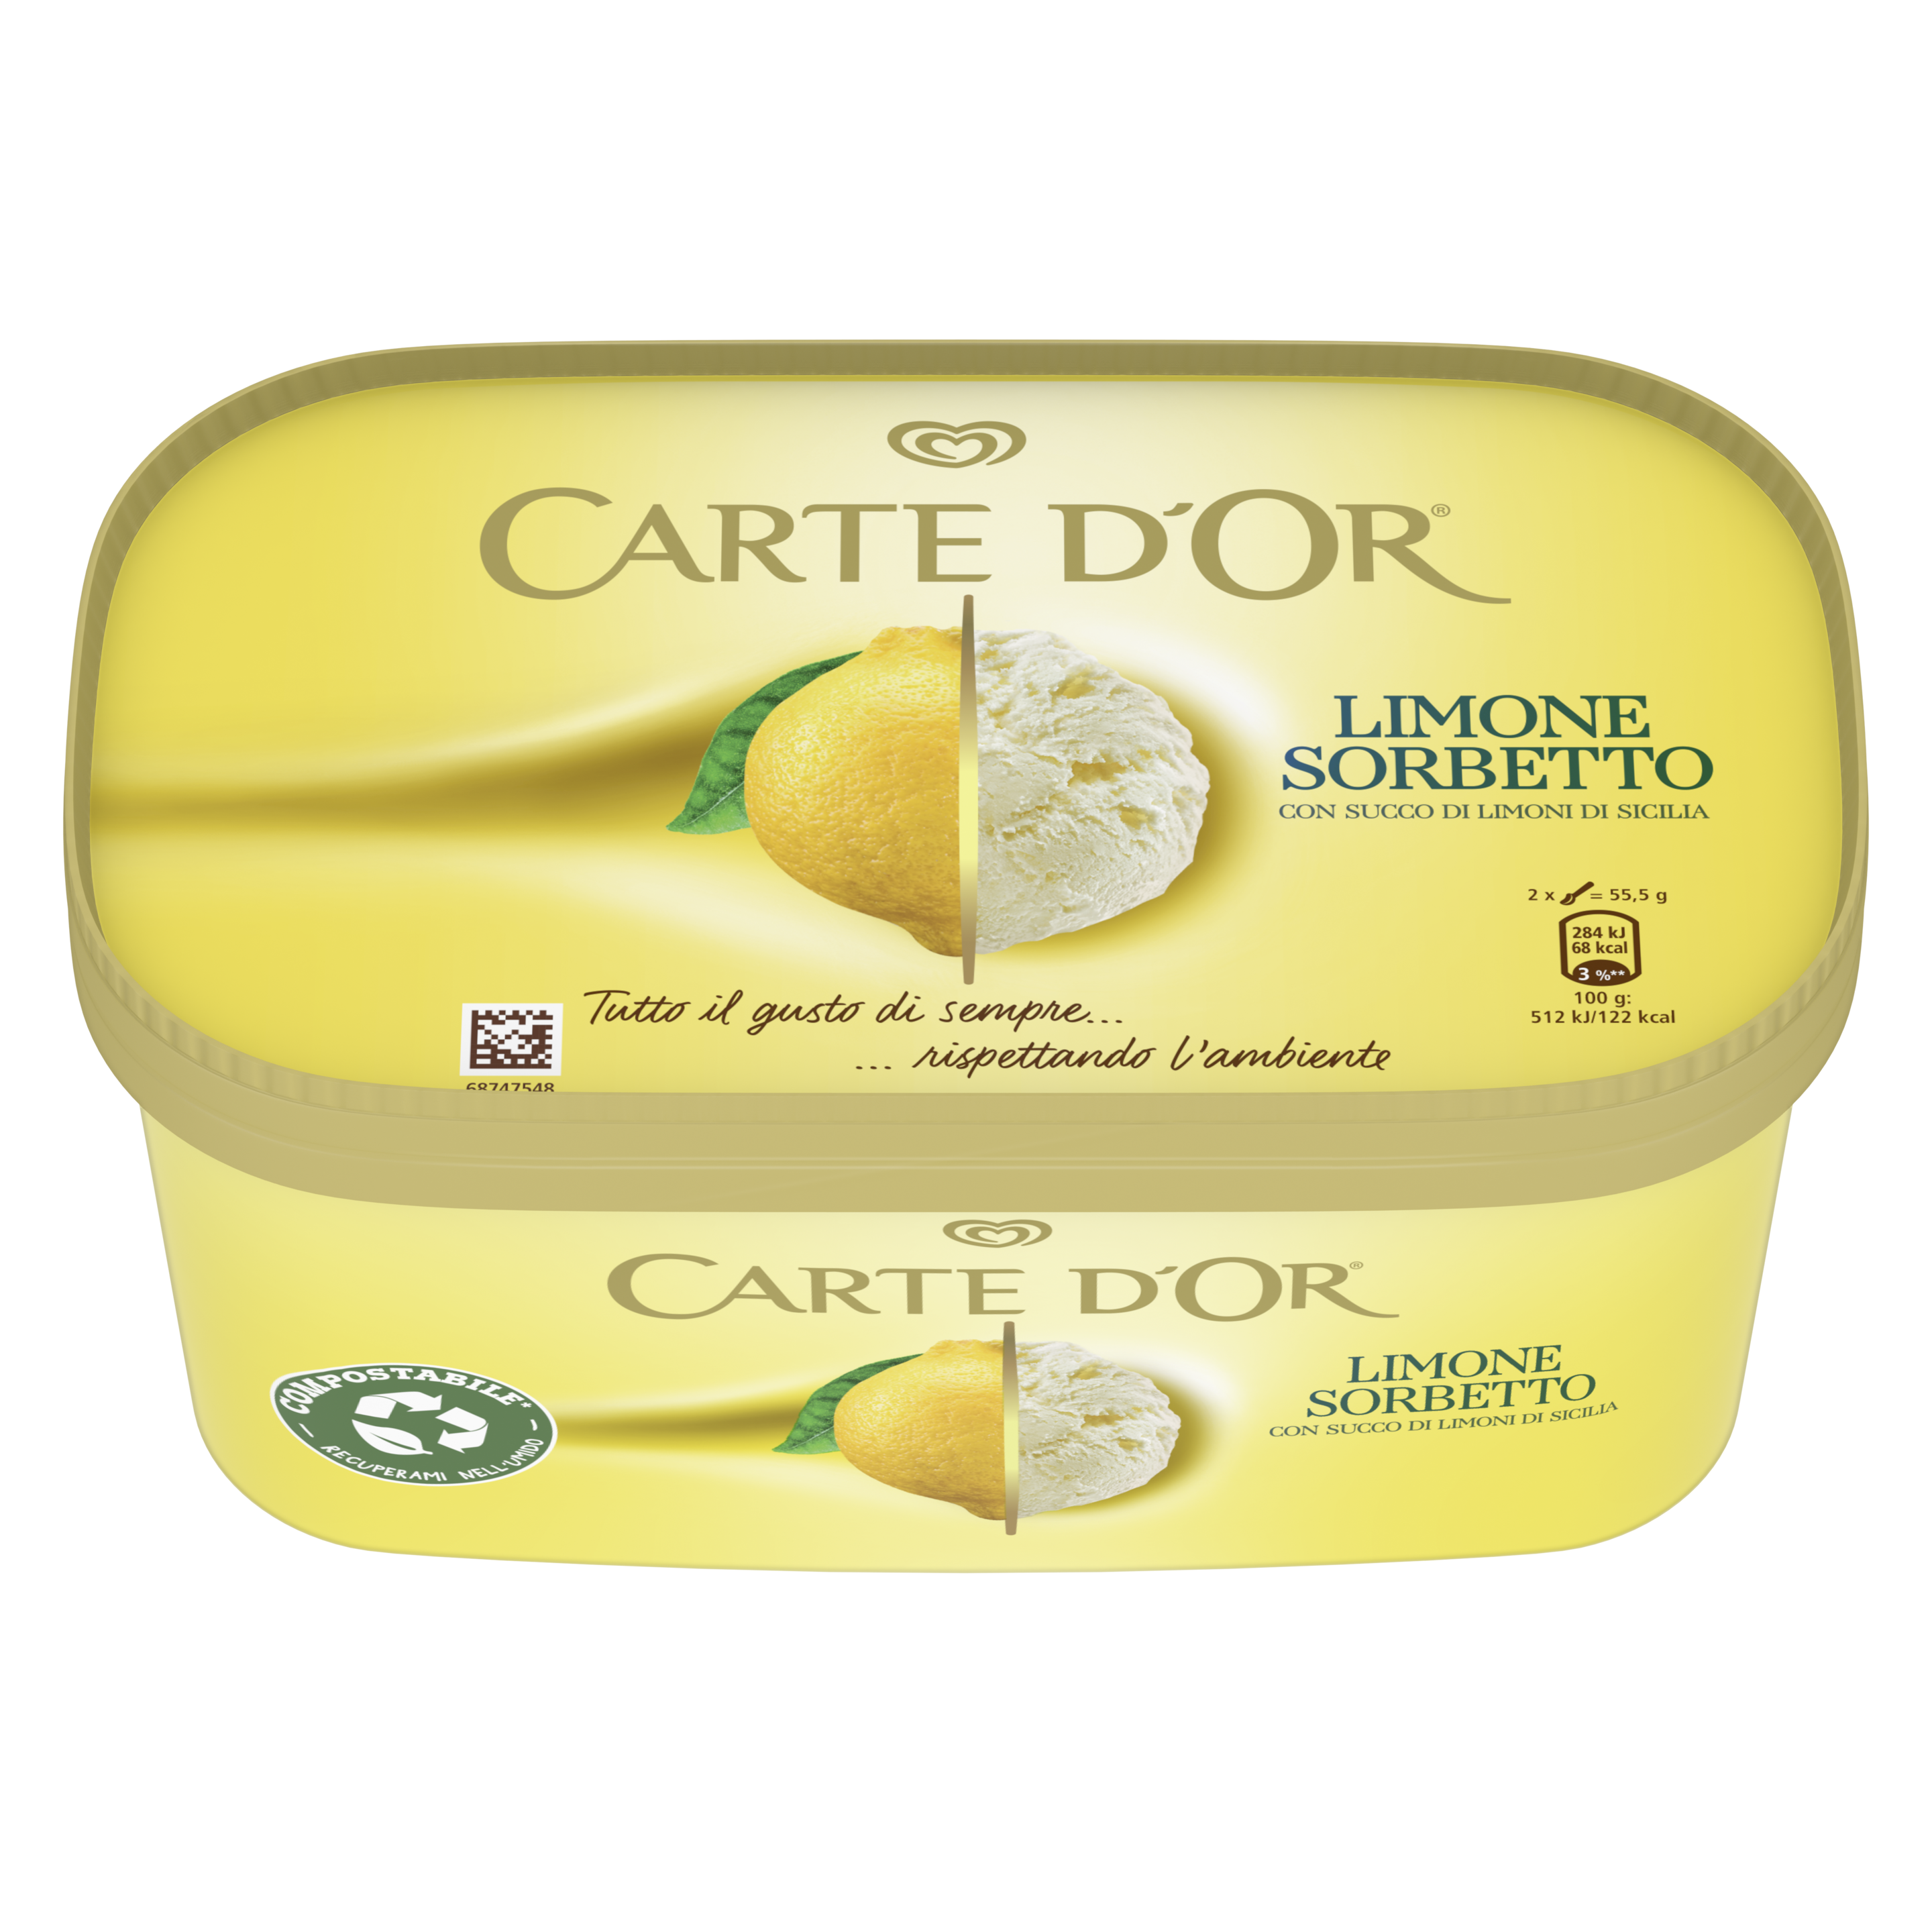 Carte D'Or Limone Sorbetto